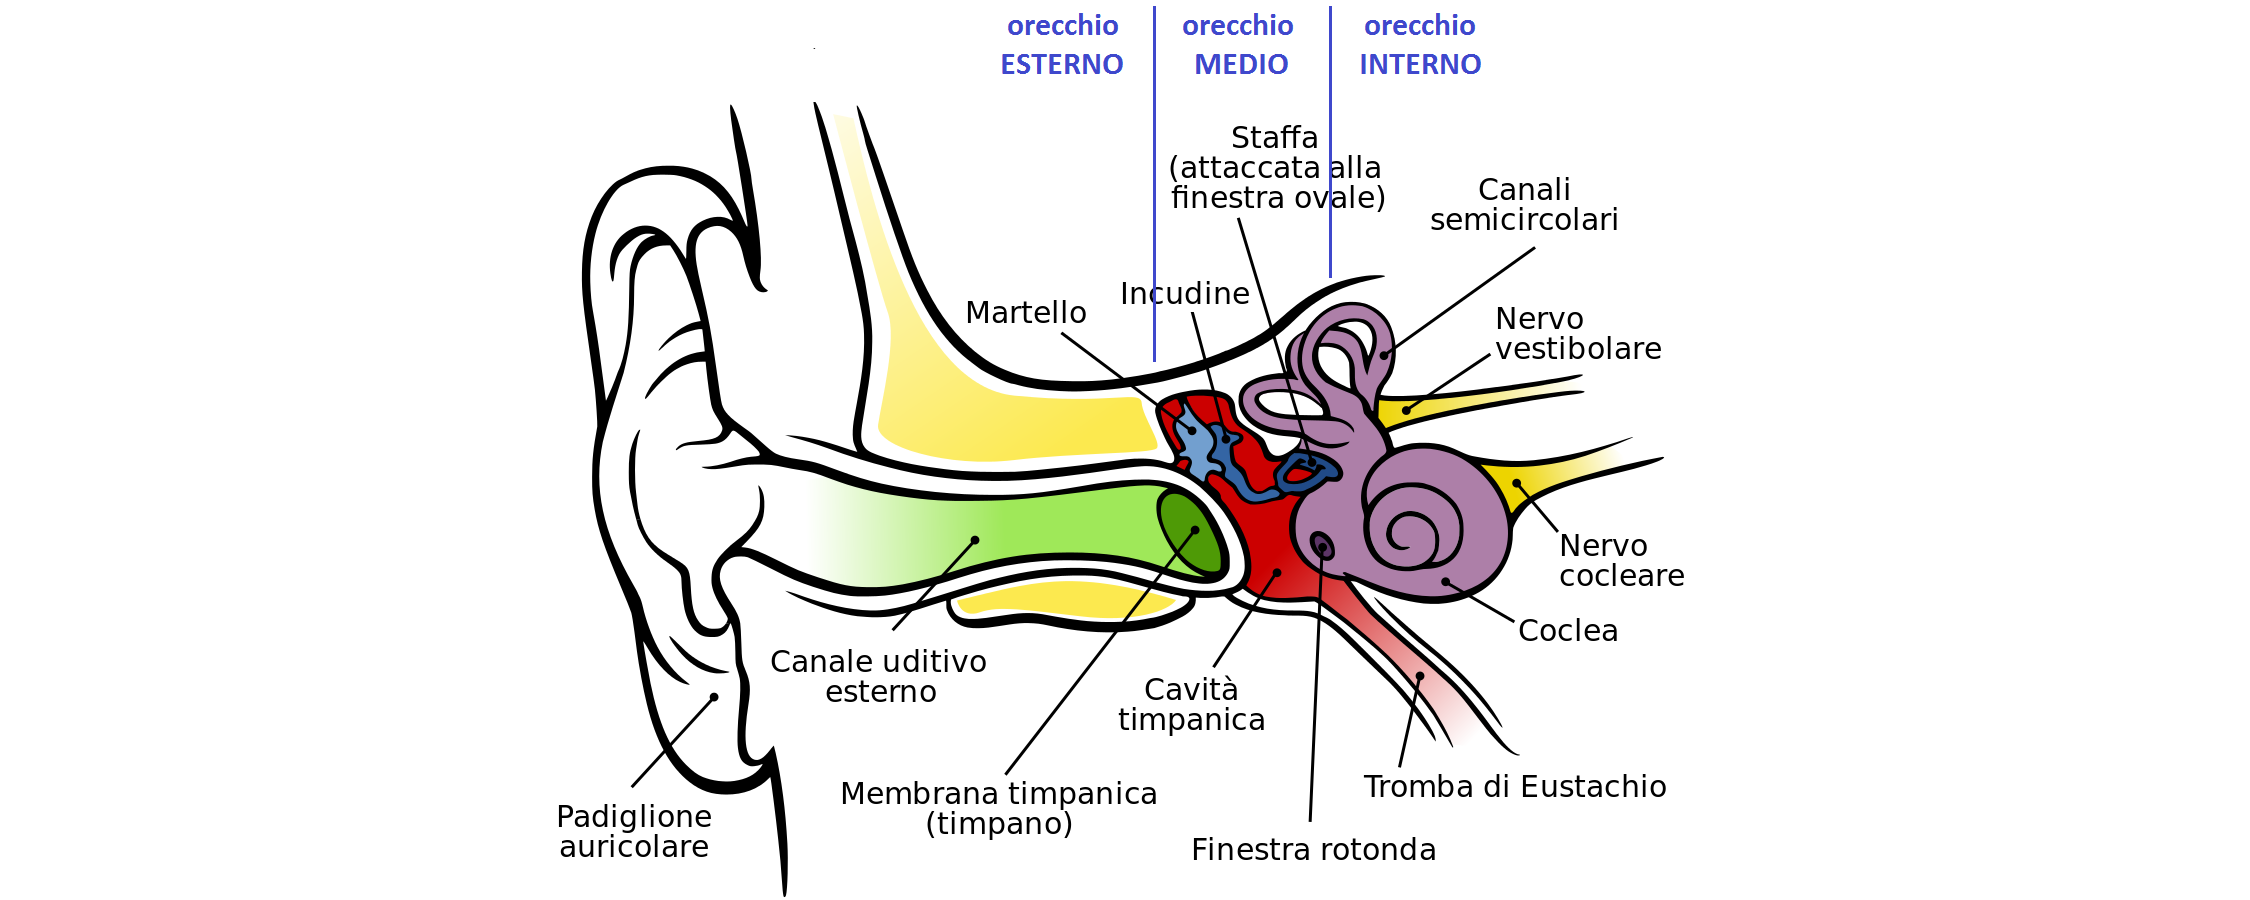 Sai cosa c'è dentro al tuo orecchio?